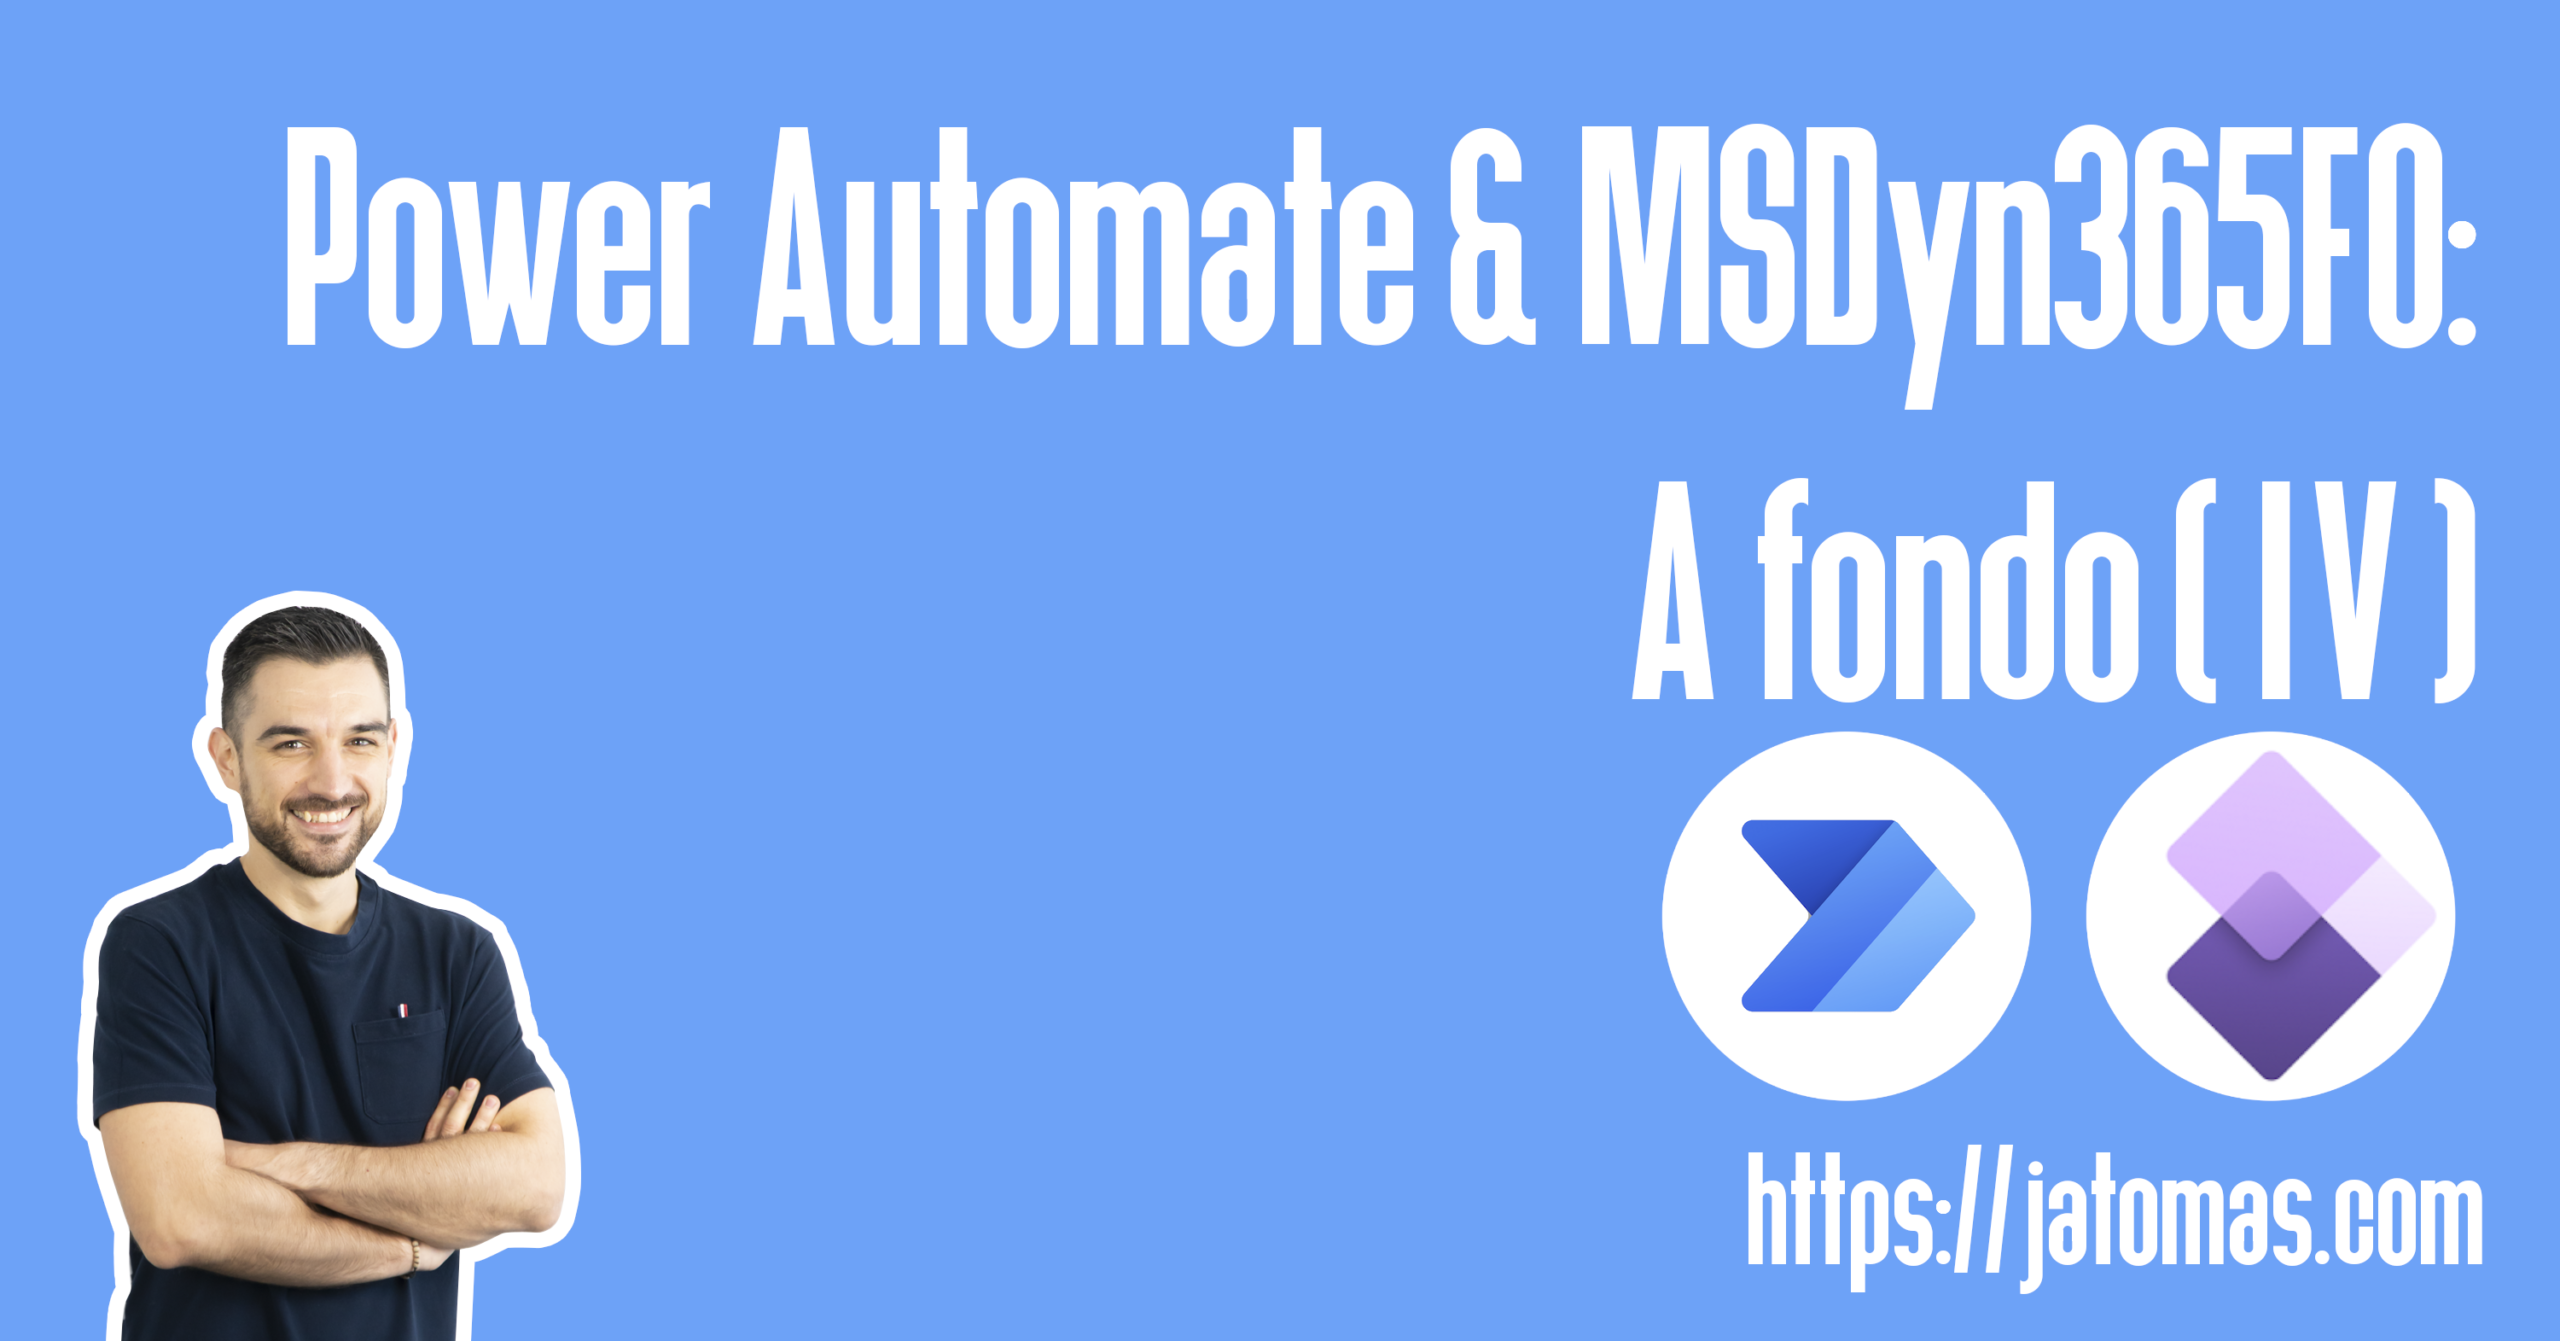 Power Automate & MSDyn365FO: A fondo (IV)